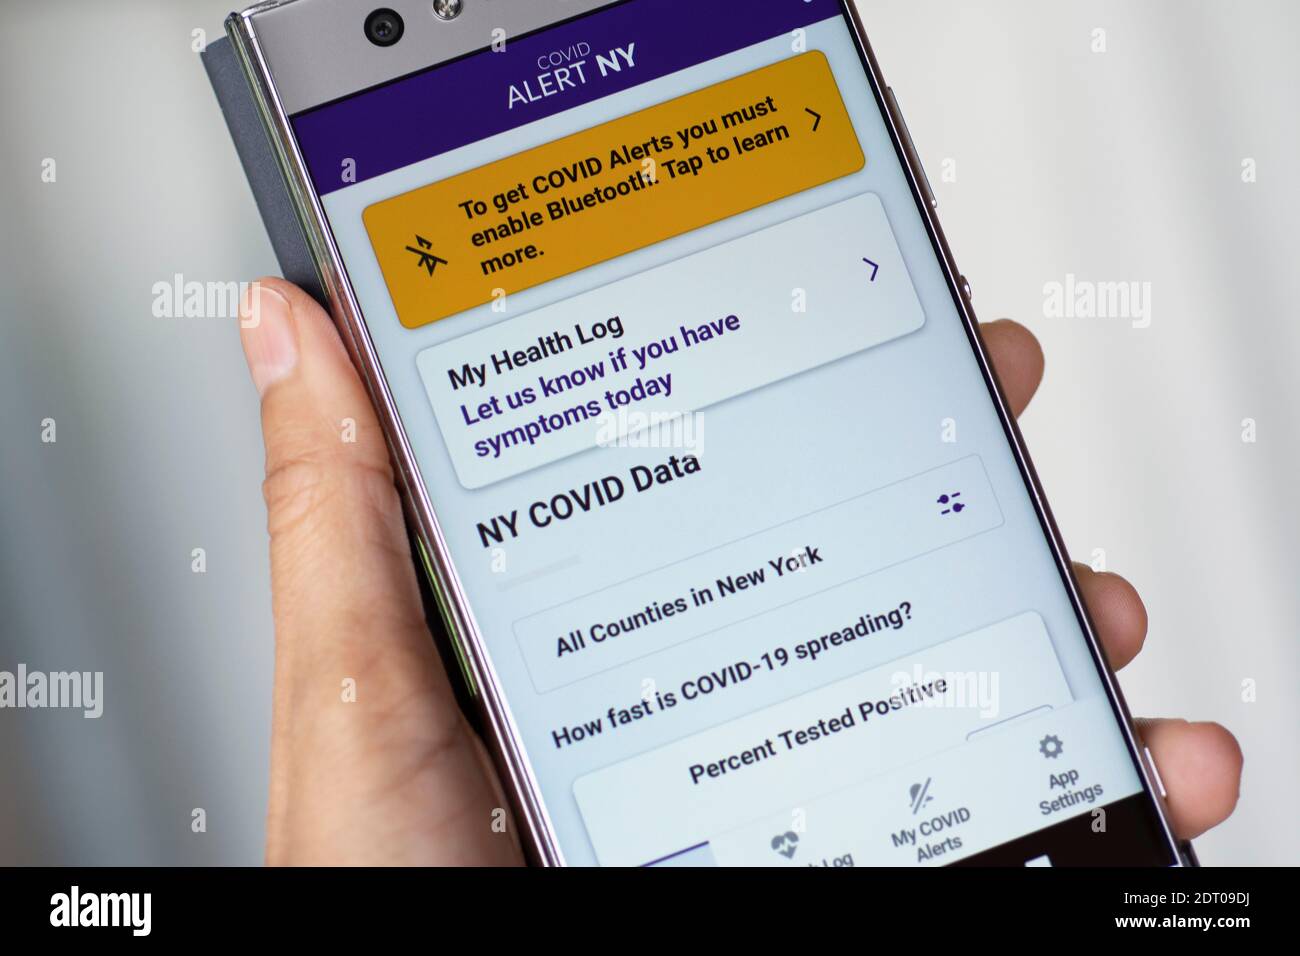 Application COVID Alert NY sur téléphone mobile, écran de smartphone Banque D'Images